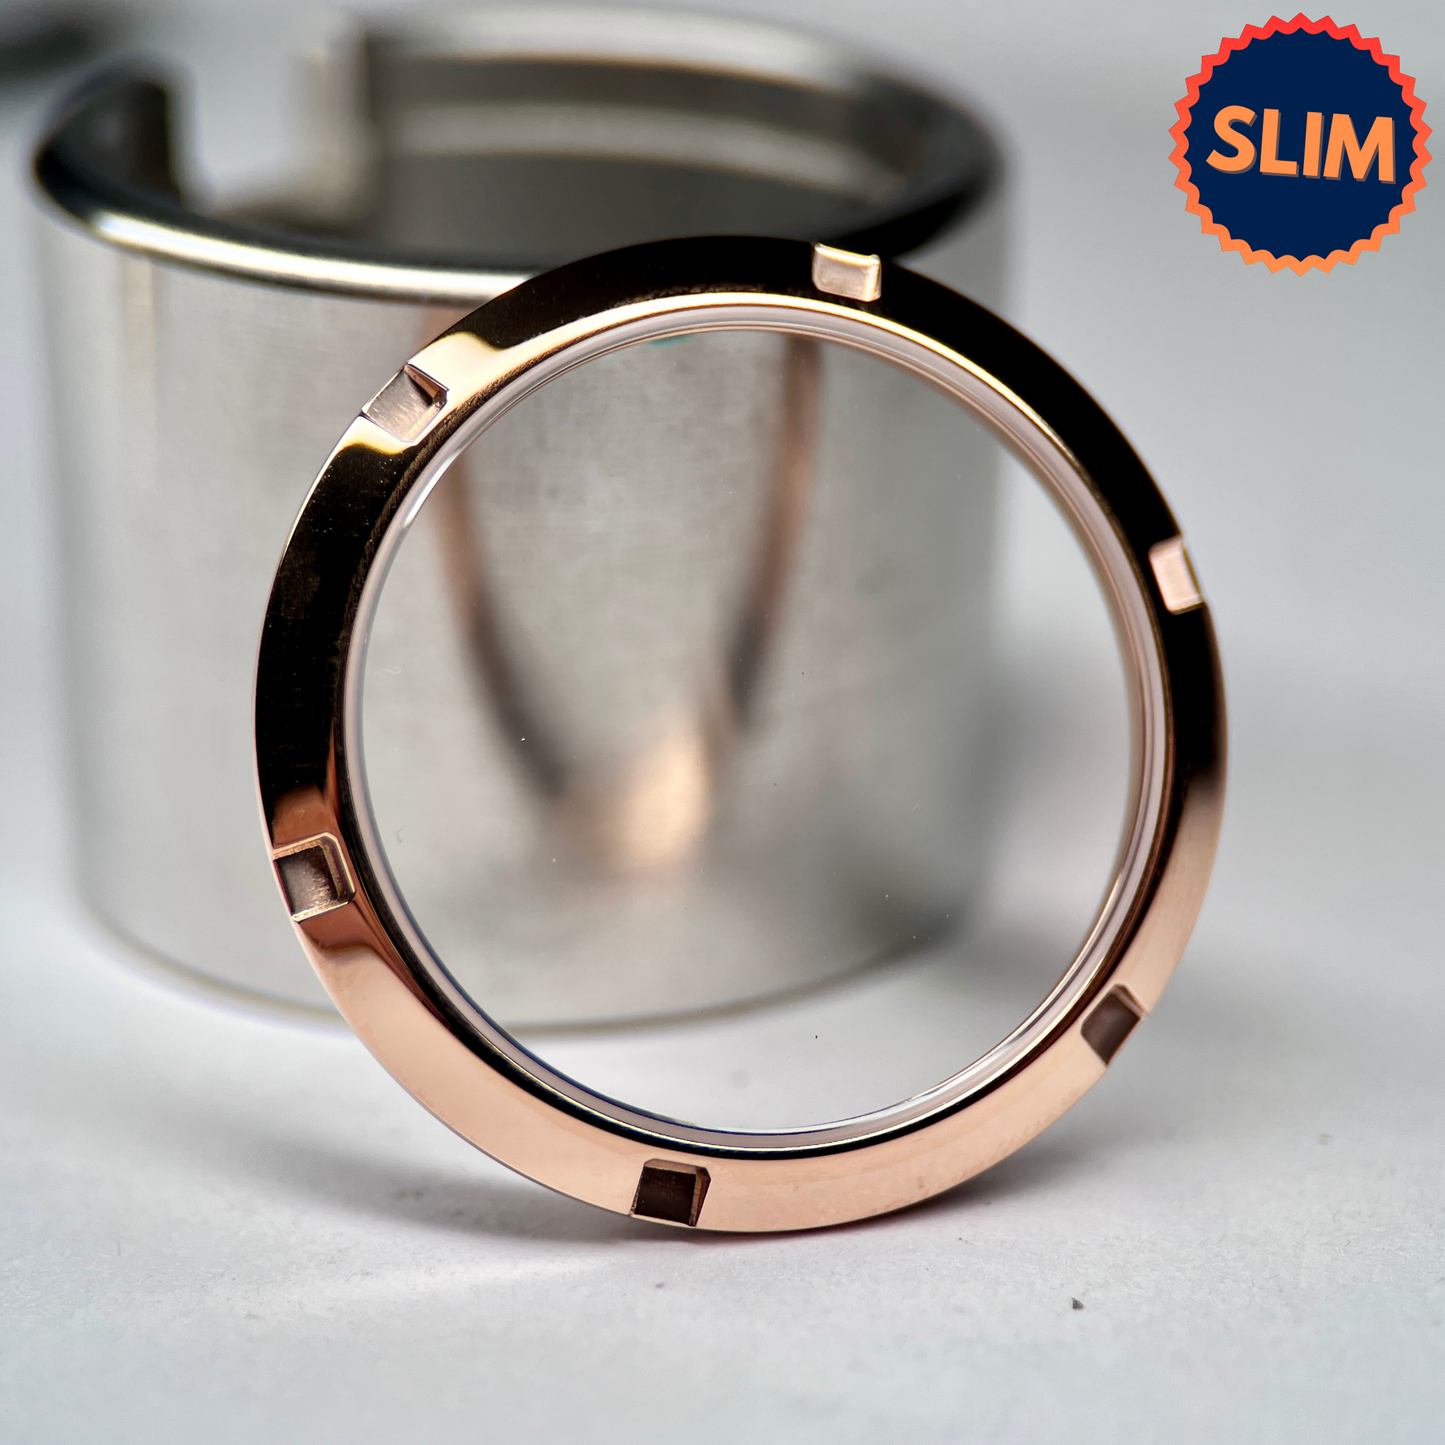 SKX007 Slim: Polished Rose Gold Open Caseback